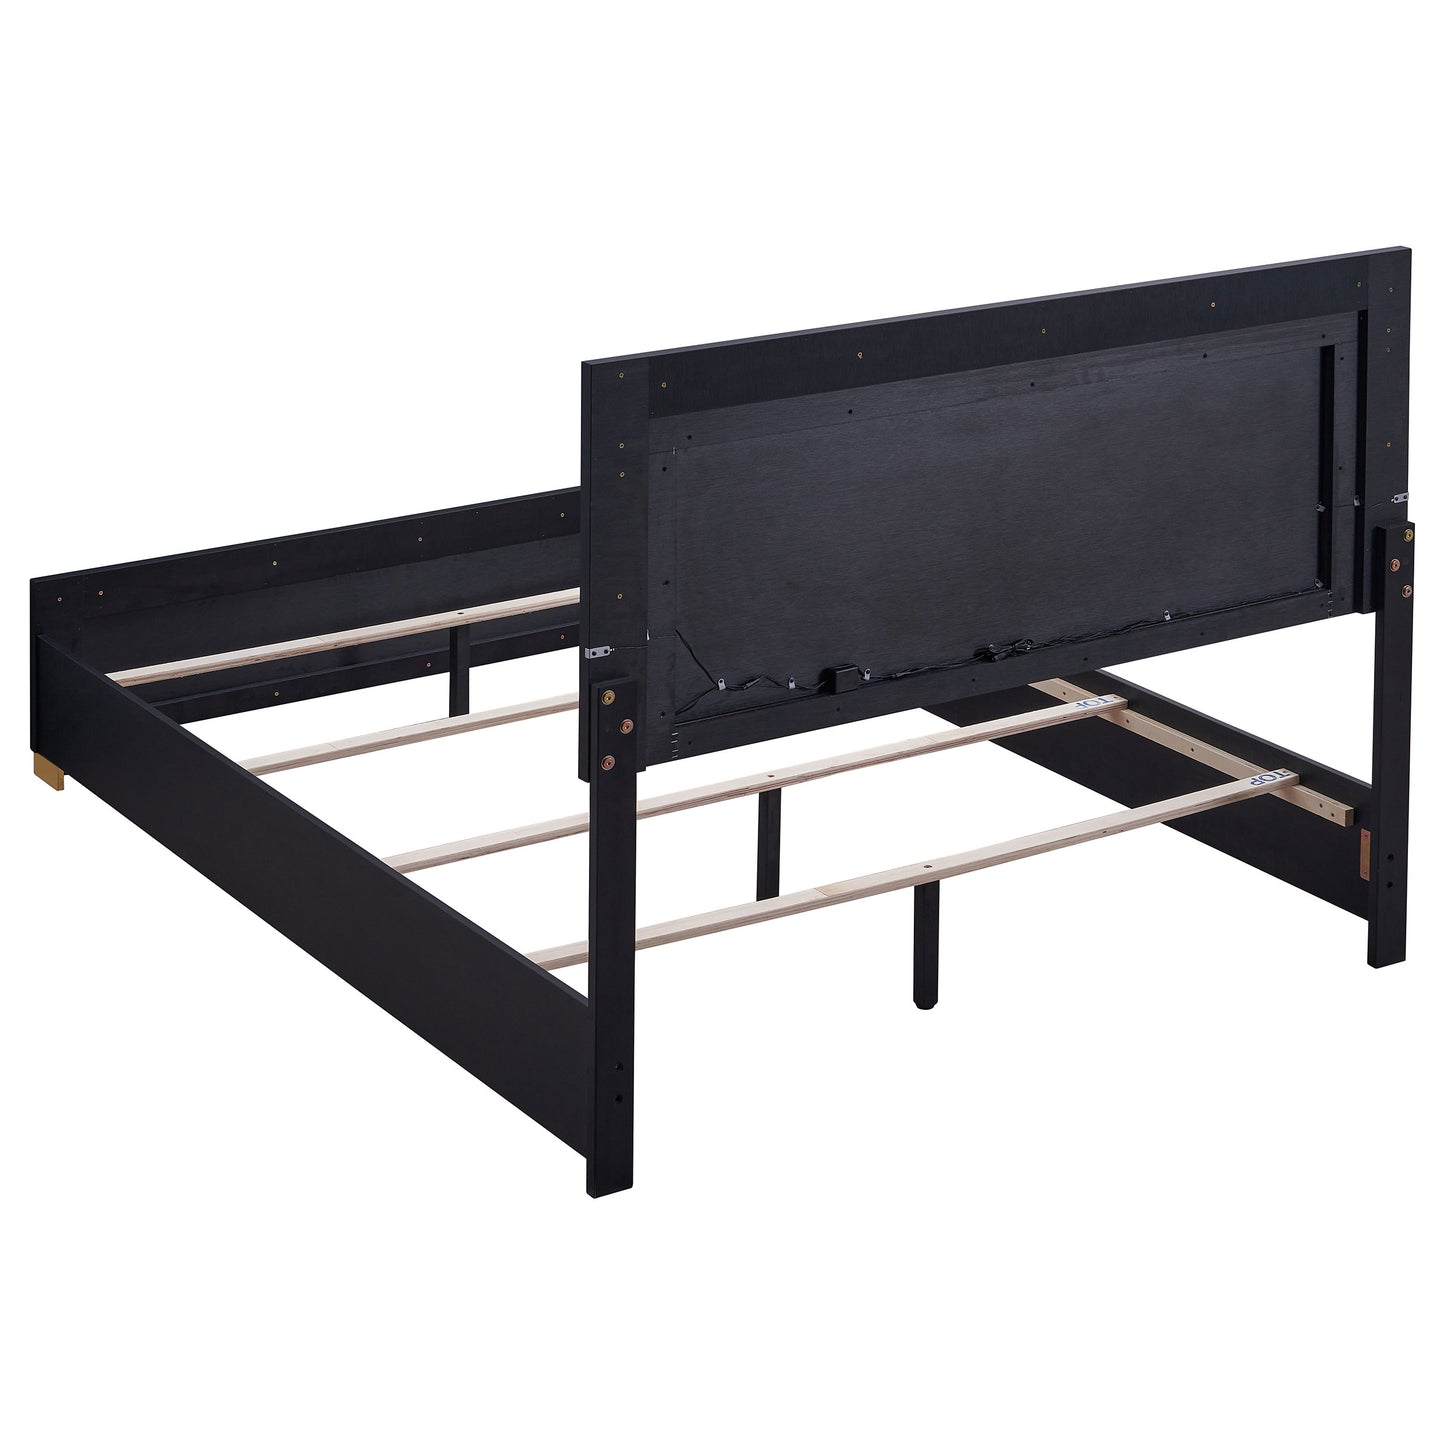 Marceline Wood Full LED Panel Bed Black